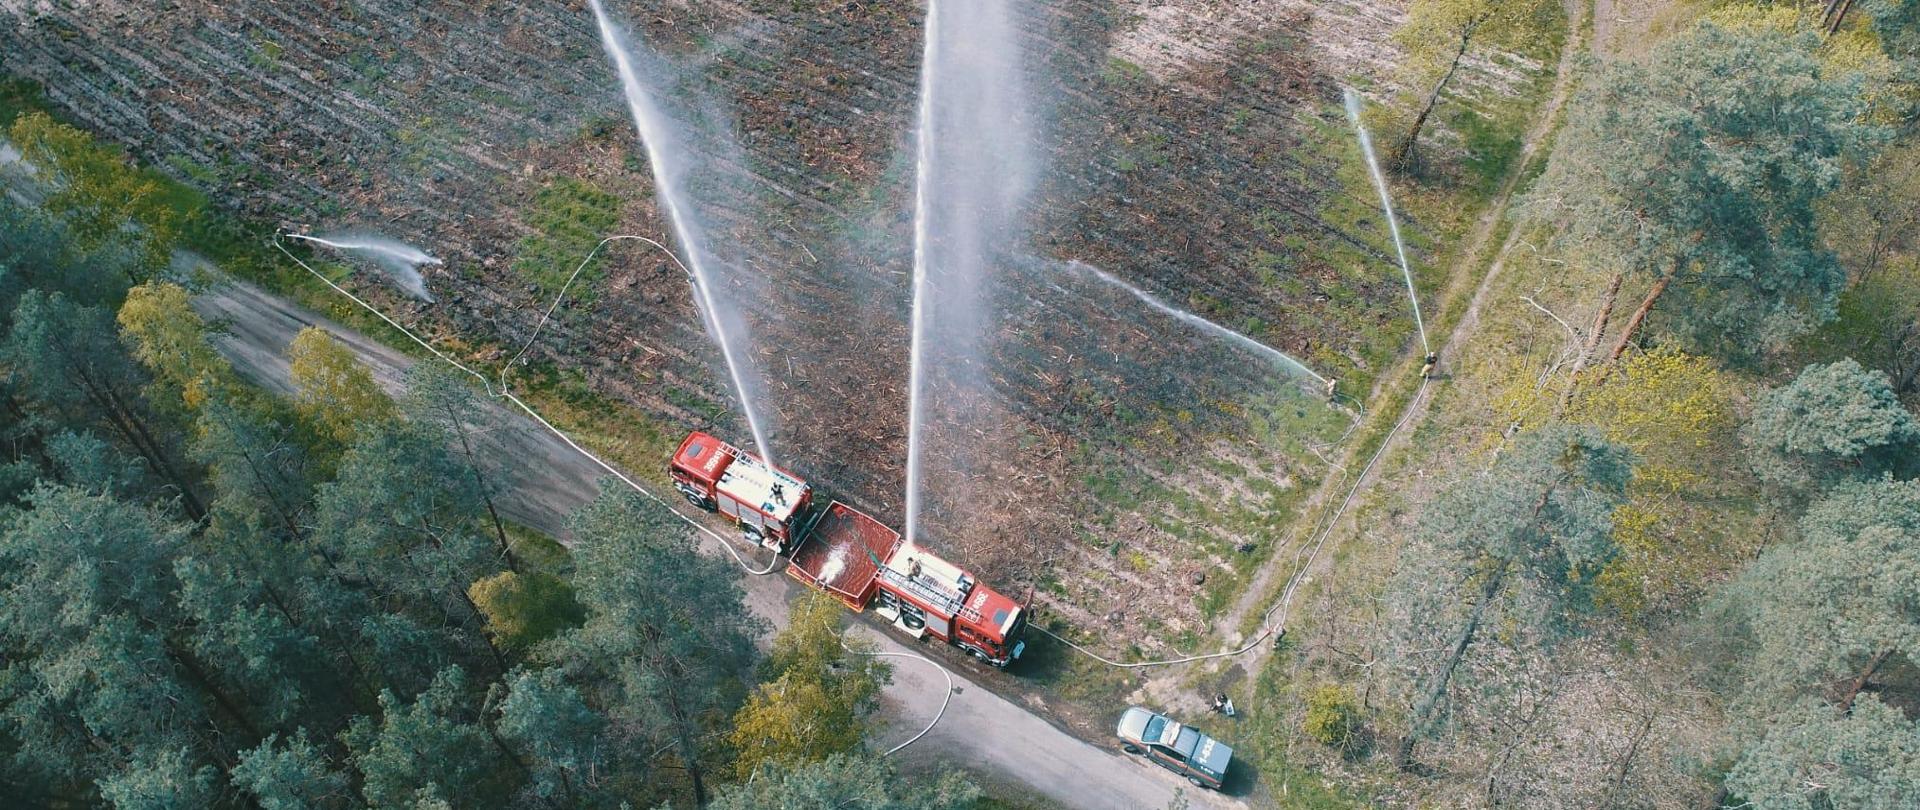 Widok z góry dwóch pojazdów gaśniczych na terenie leśnym stojących przy rozkładanym zbiorniku z wodą, Z pojazdów gaśniczych podawane są prądy gaśnicze z działek. Ponadto podawane są 3 prądy gaśnicze przez strażaków.